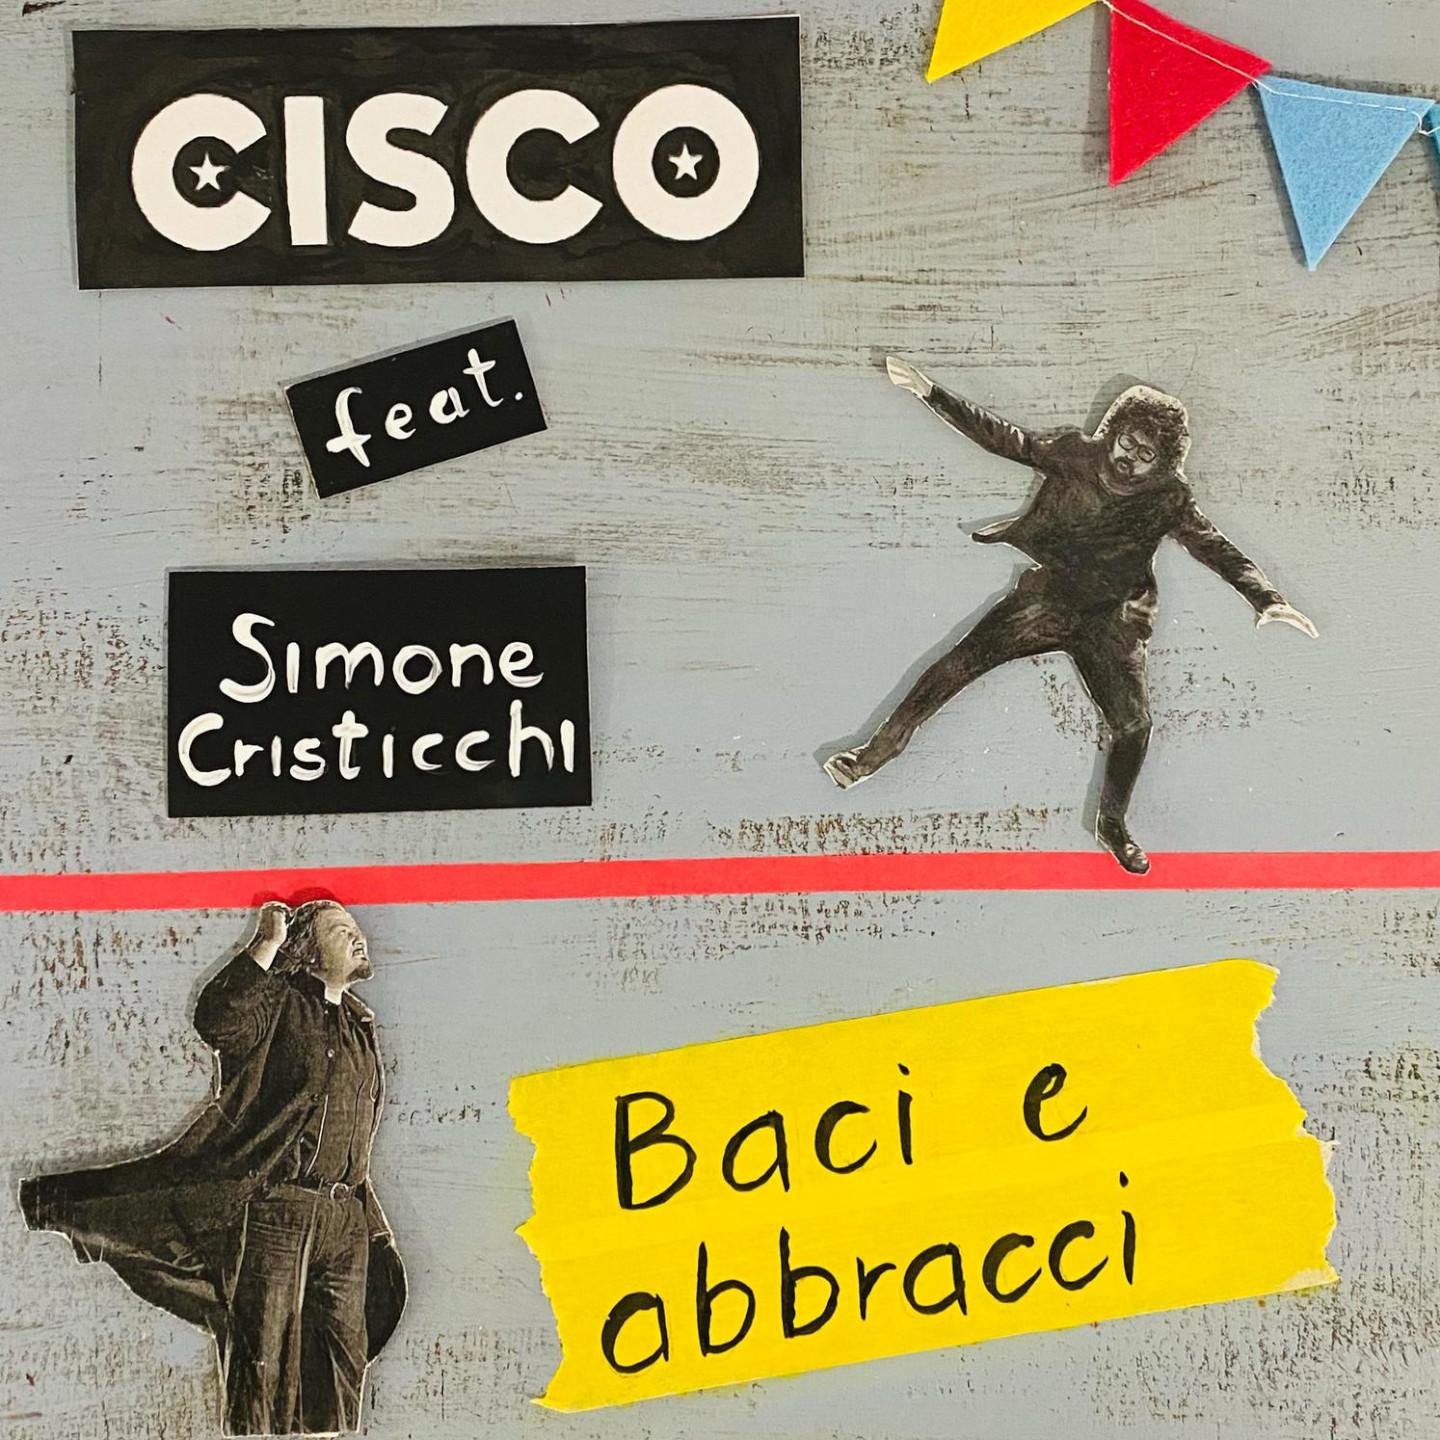 Esce il 2 aprile il nuovo singolo di Cisco con Simone Cristicchi